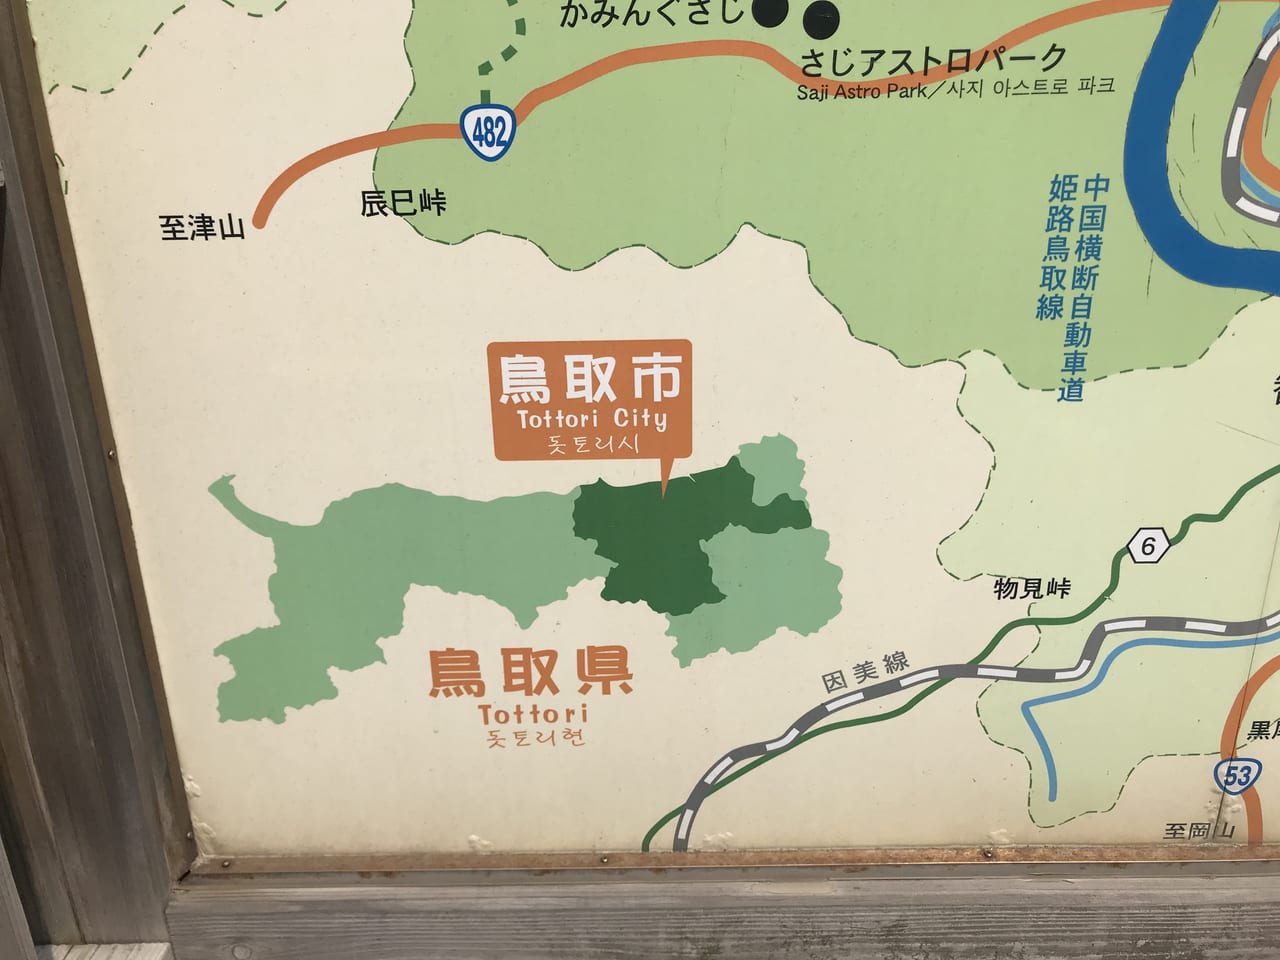 白兎道の駅に設置されている観光案内の地図